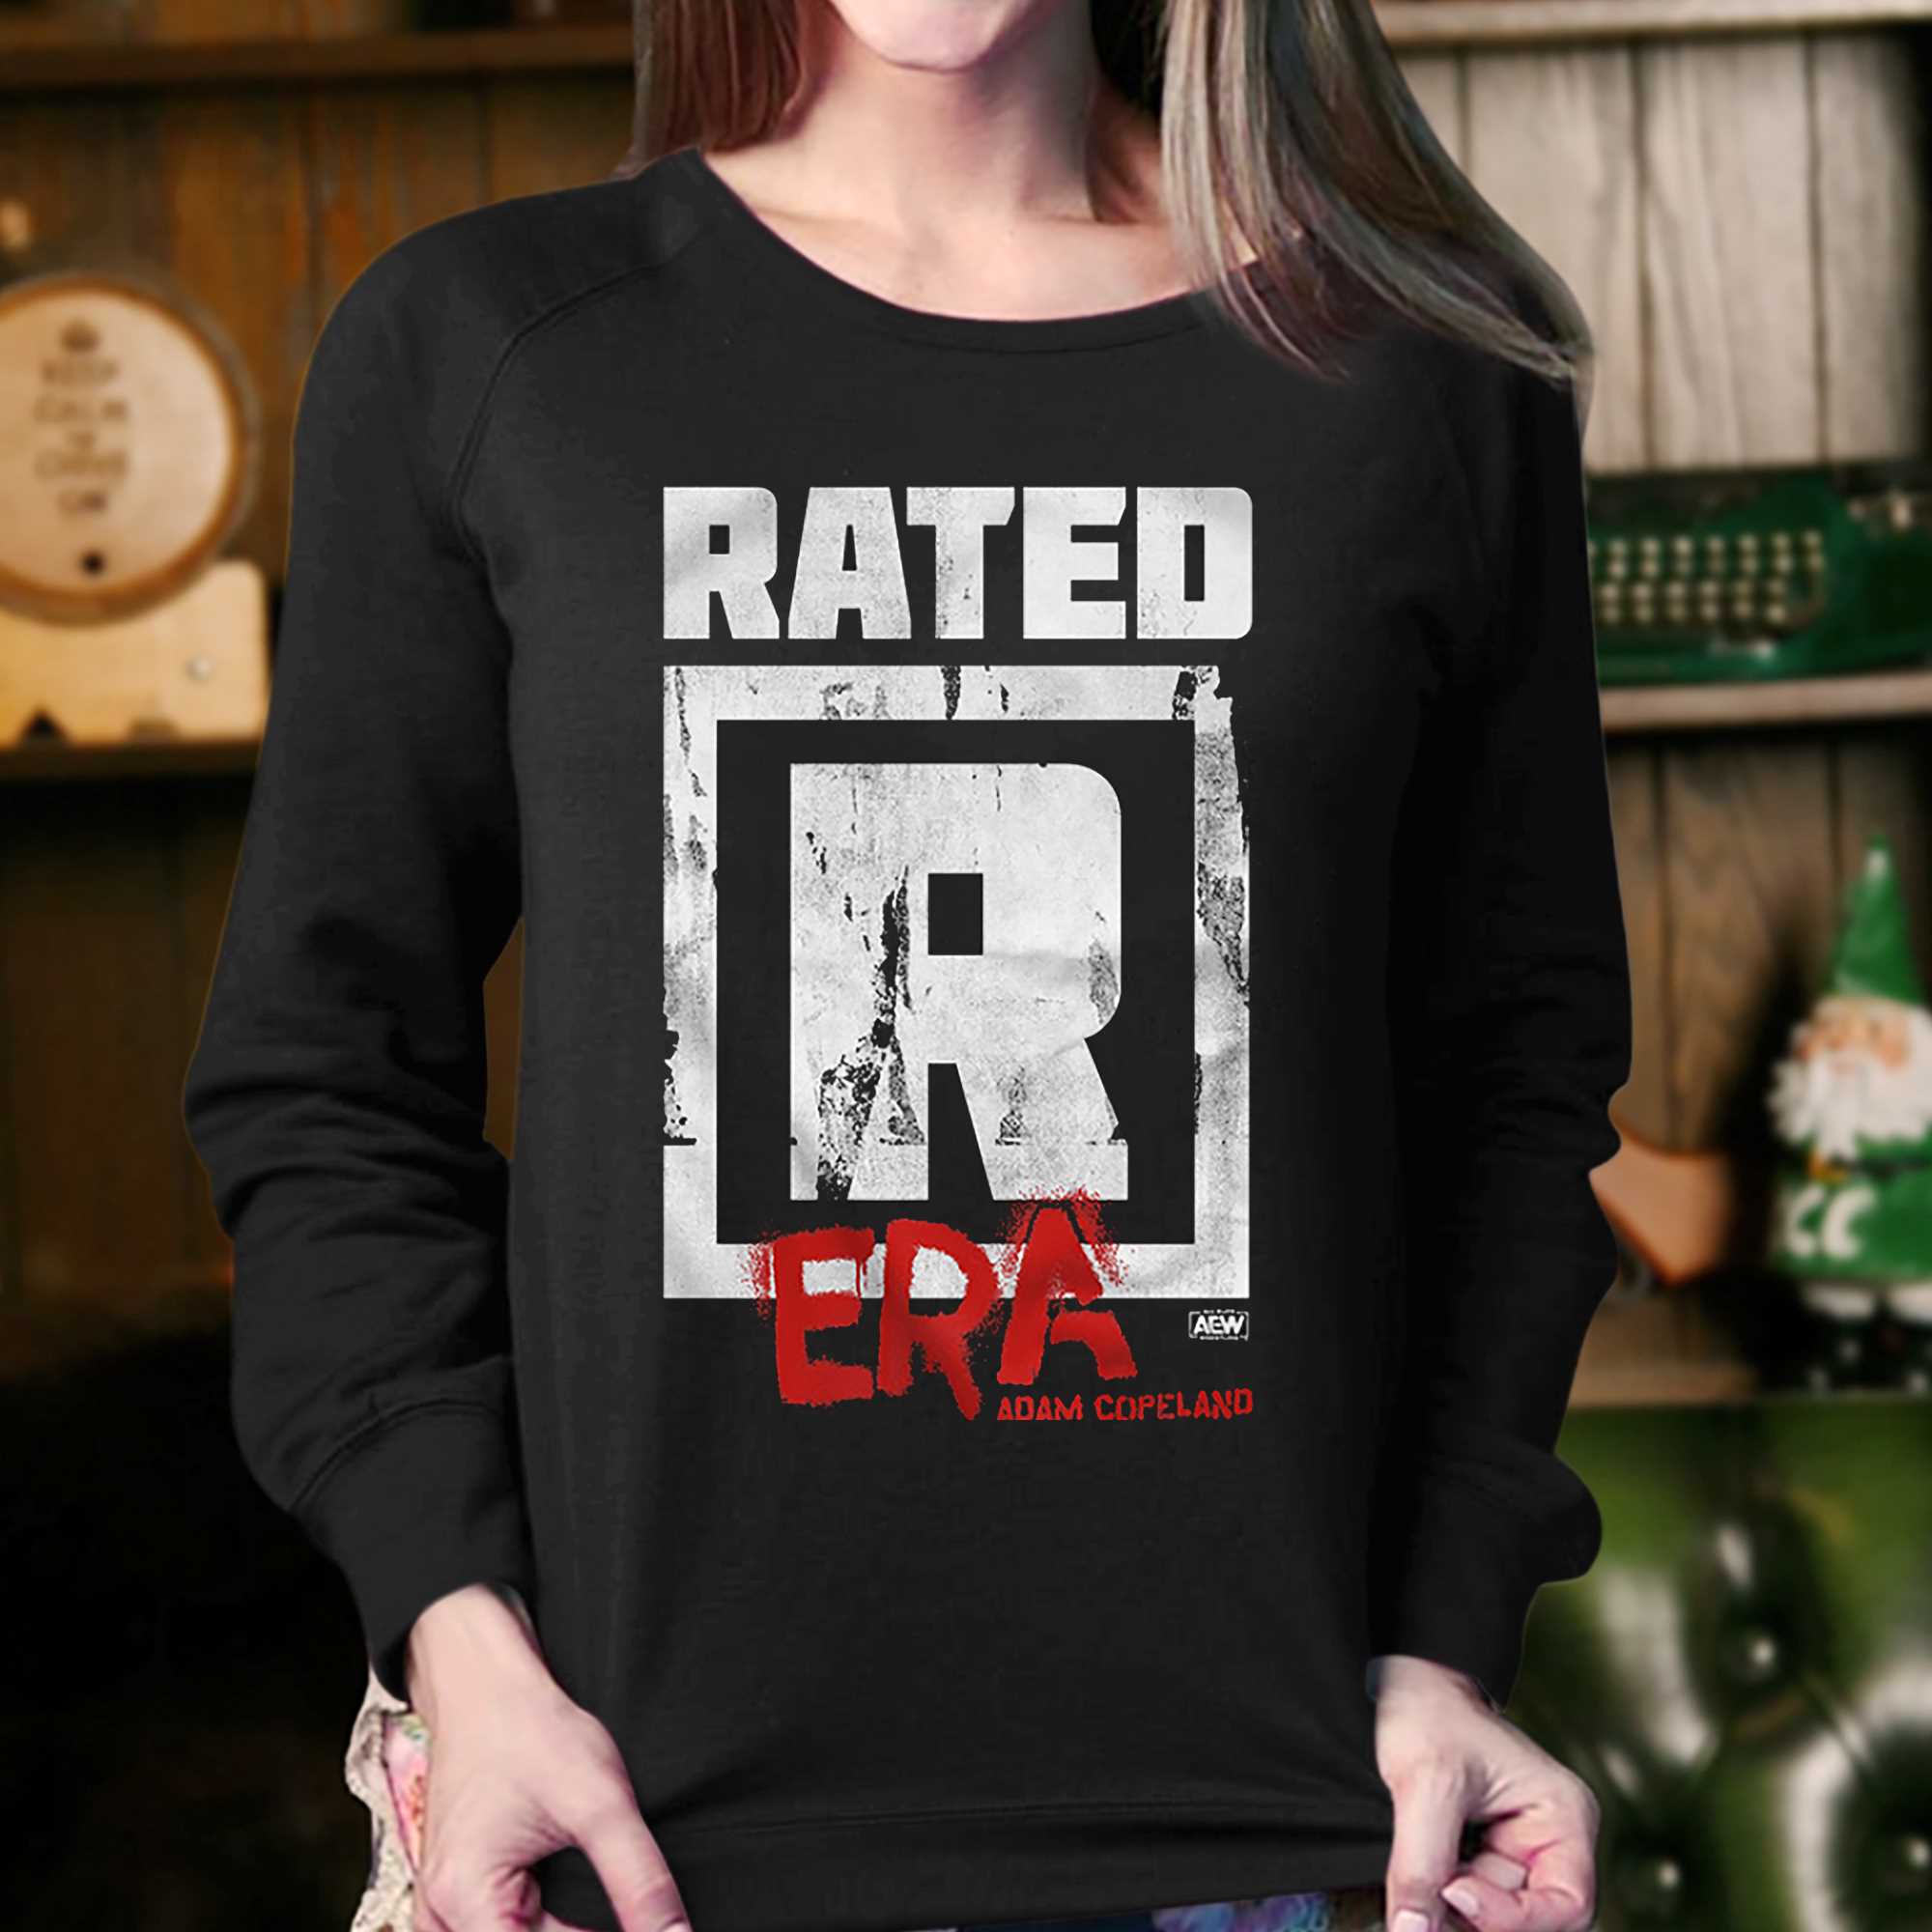 ShopAEW.com on X: Rated R Era! Check out this Adam Copeland shirt